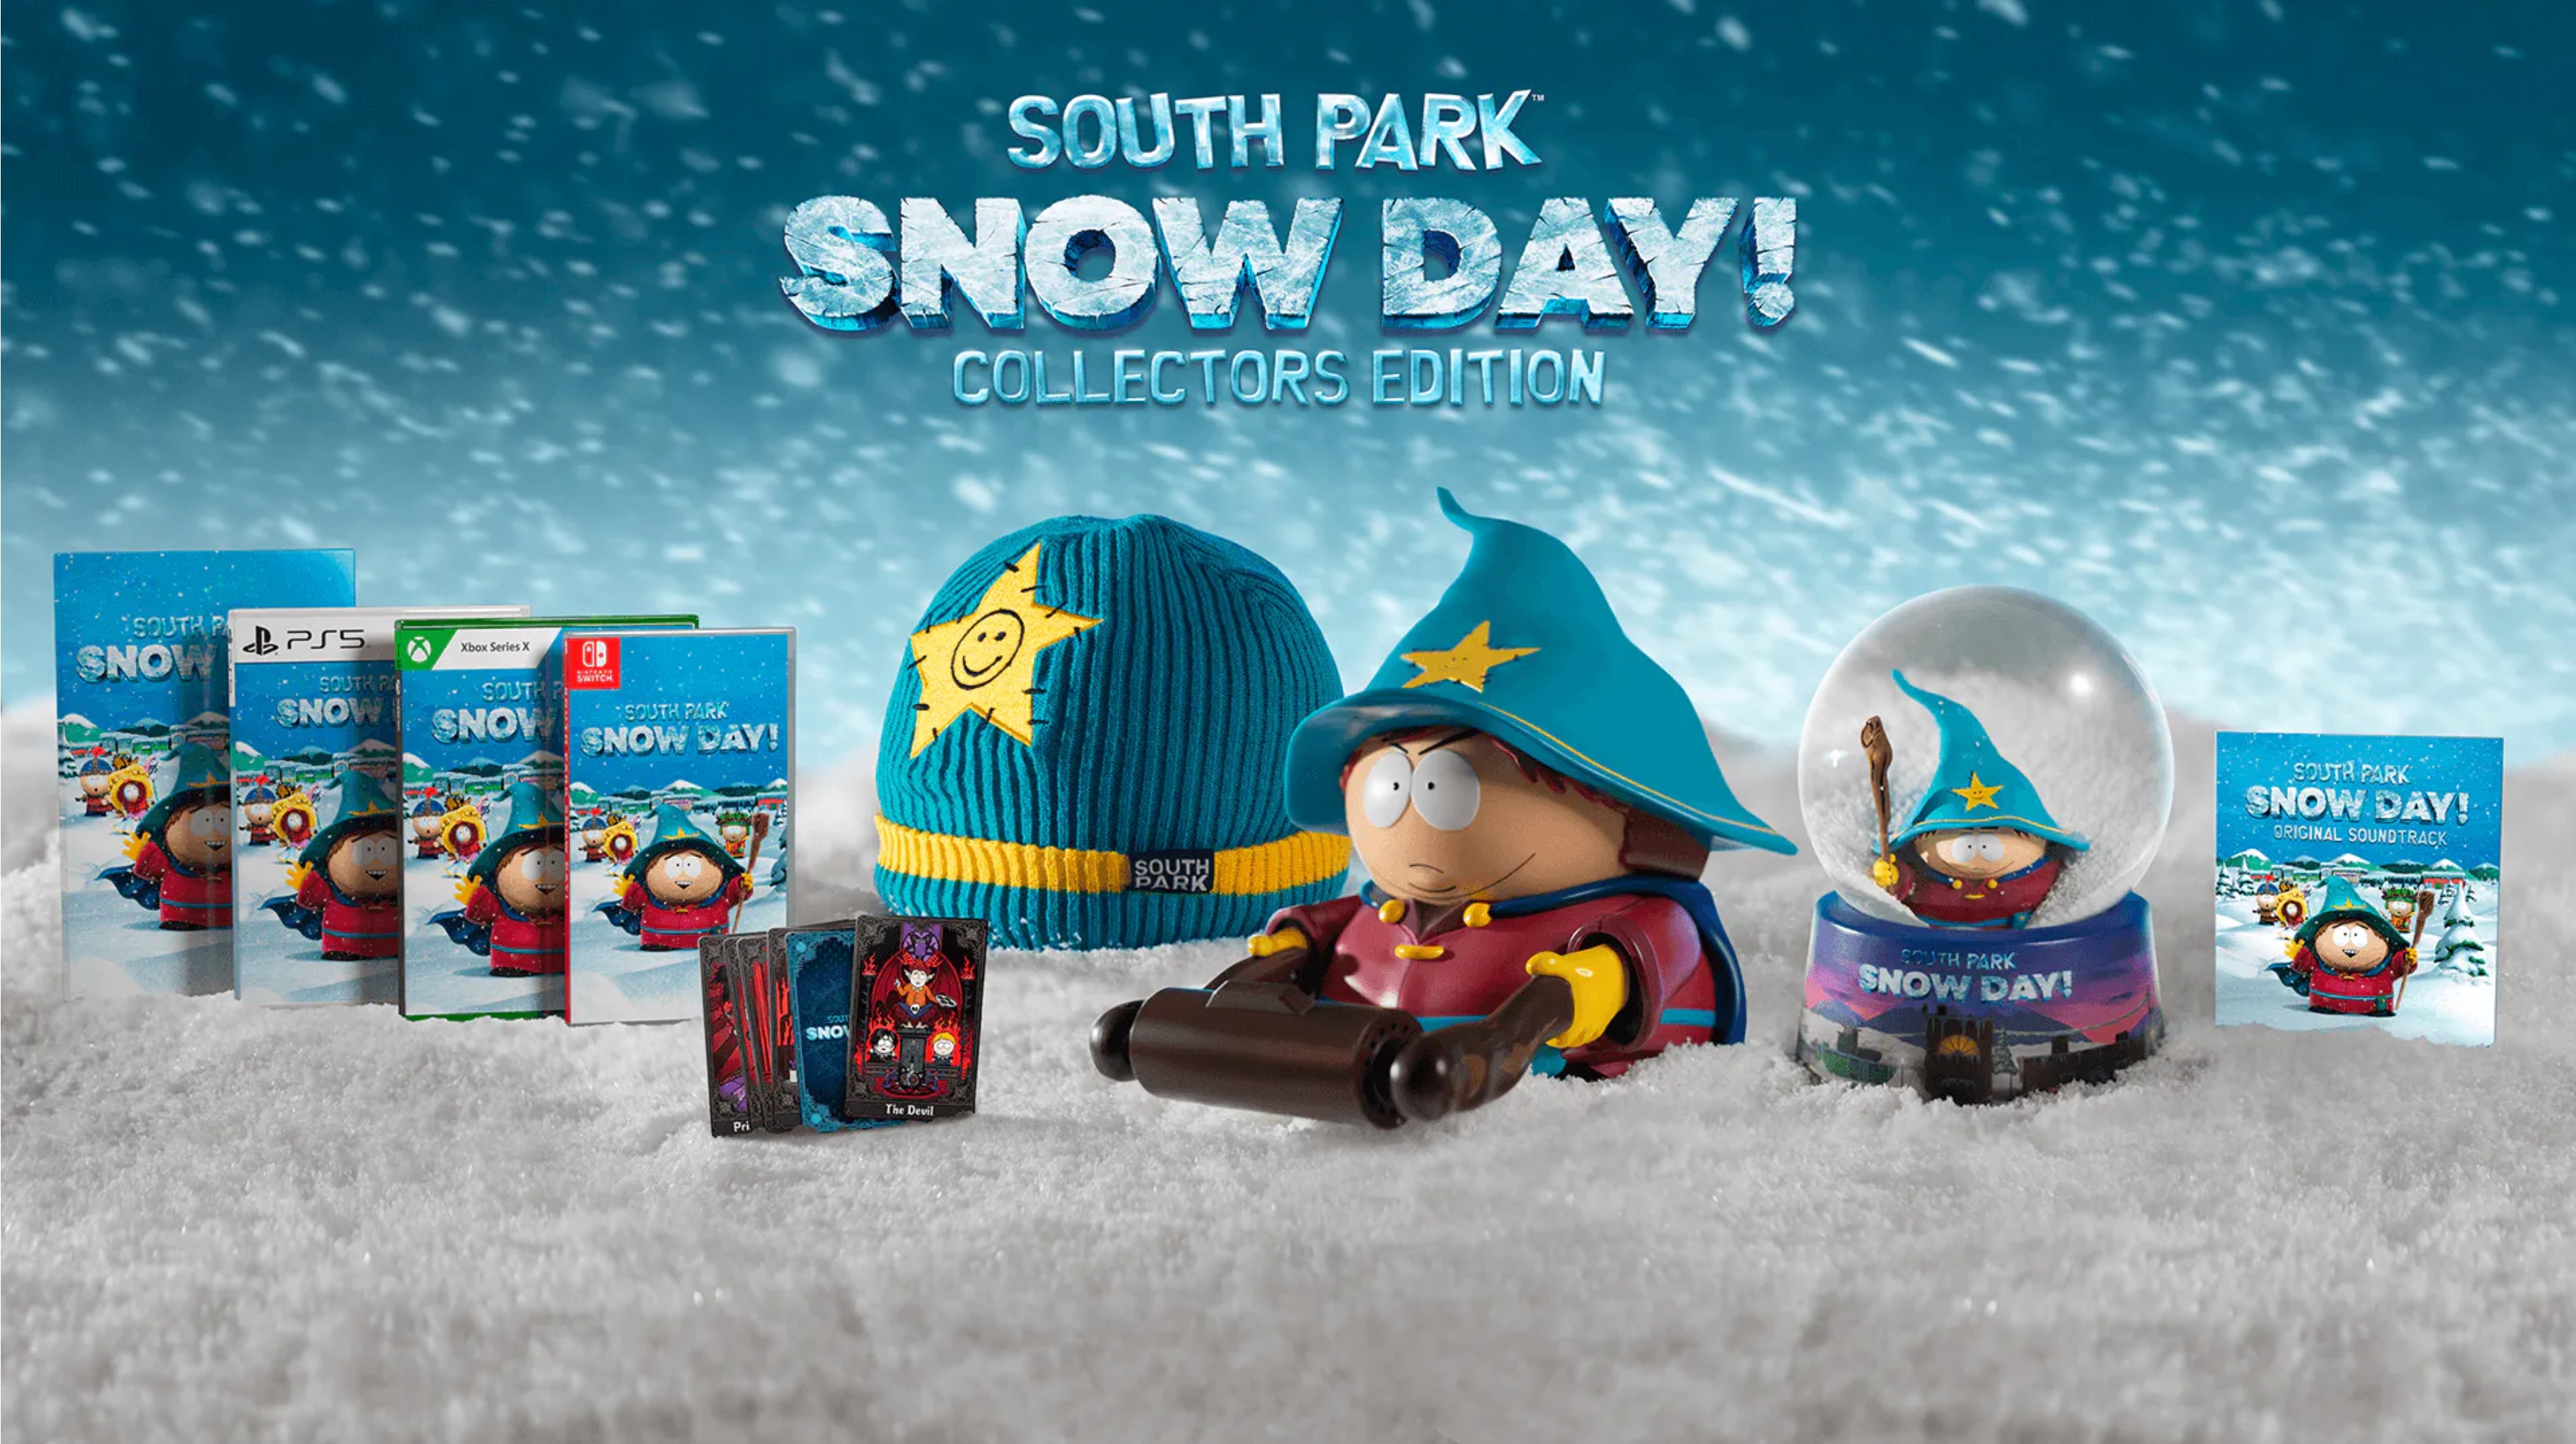 South park snow day купить. Южный парк Snow Day. Южный парк Сноу дей. South Park: Snow Day!. Southpark Snow Day.